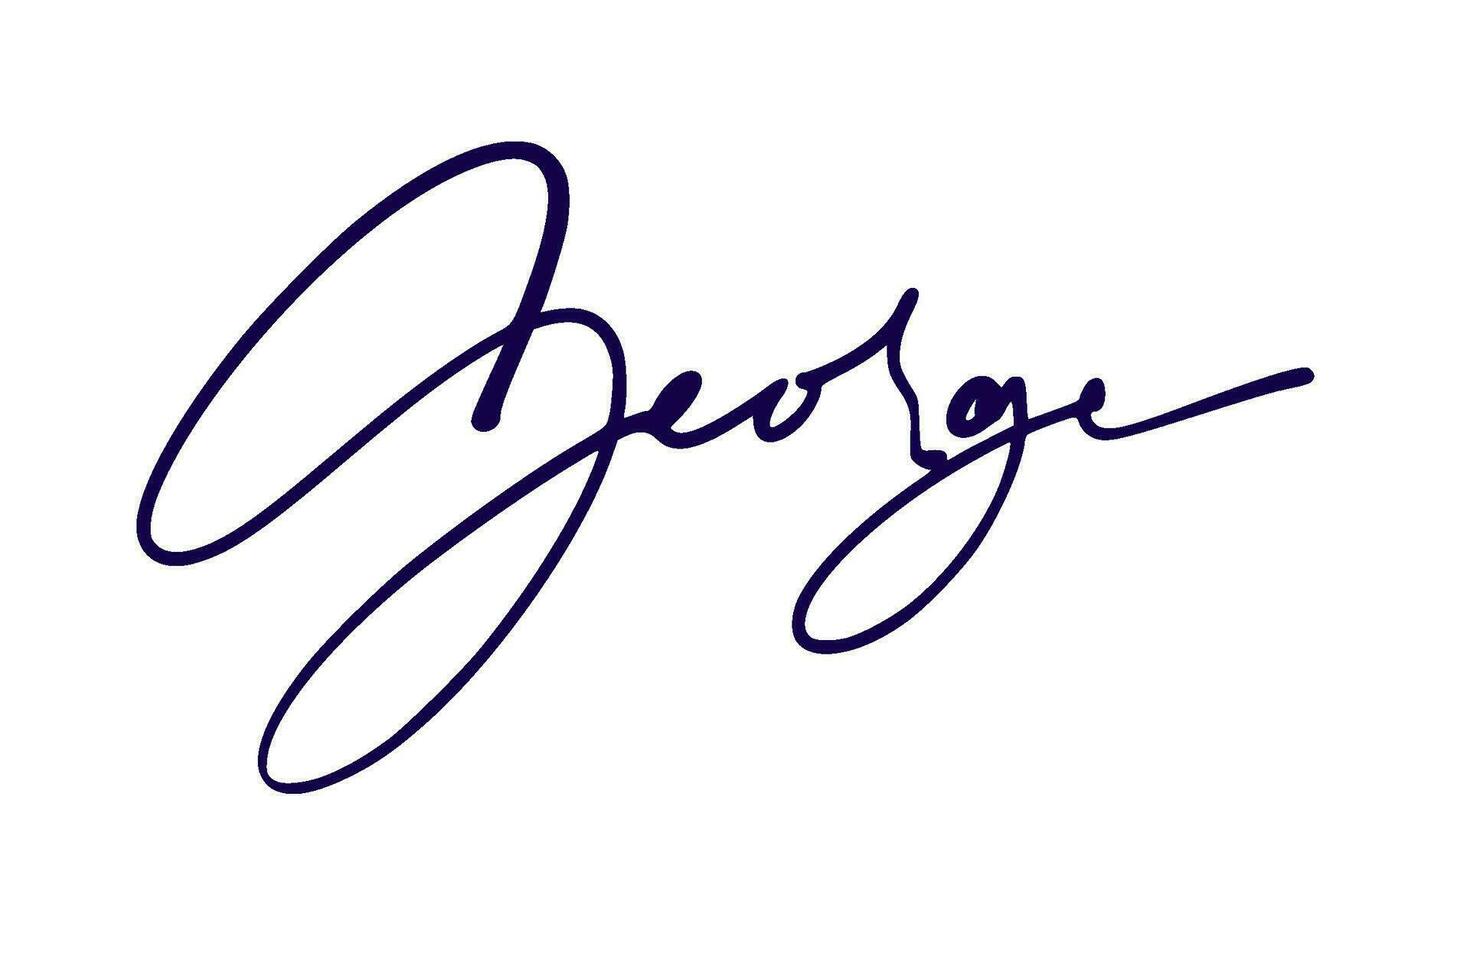 signature series G design illustration vector